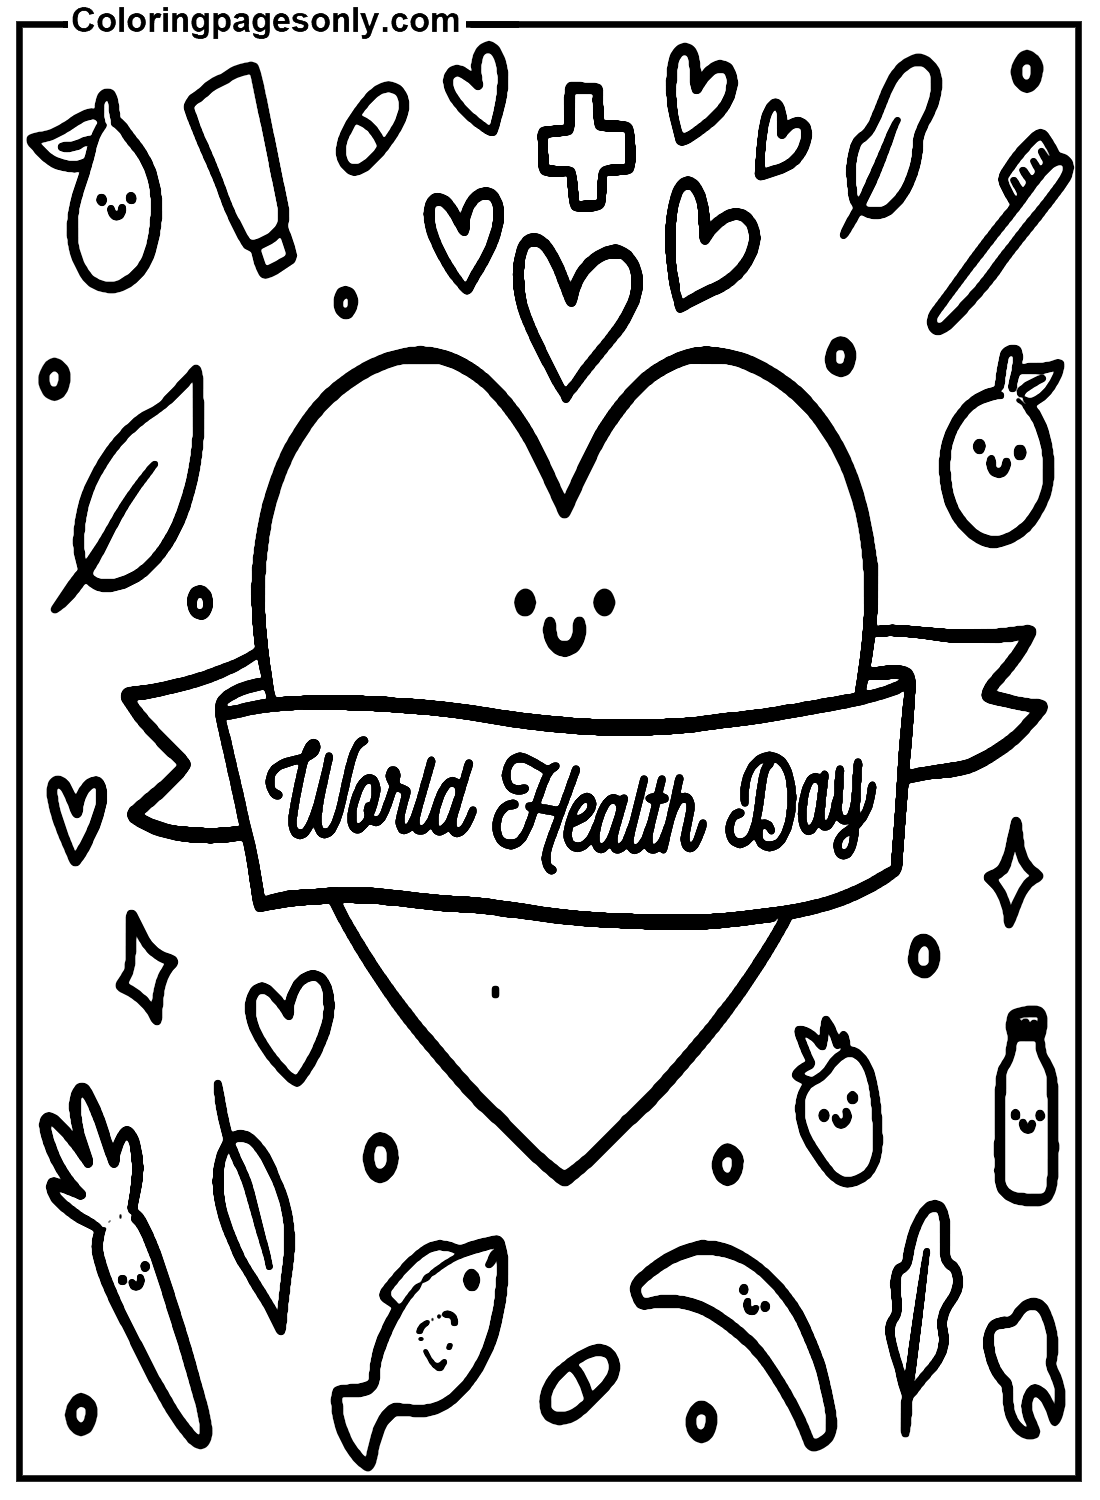 Wereldgezondheidsdag Gratis printbaar vanaf Wereldgezondheidsdag